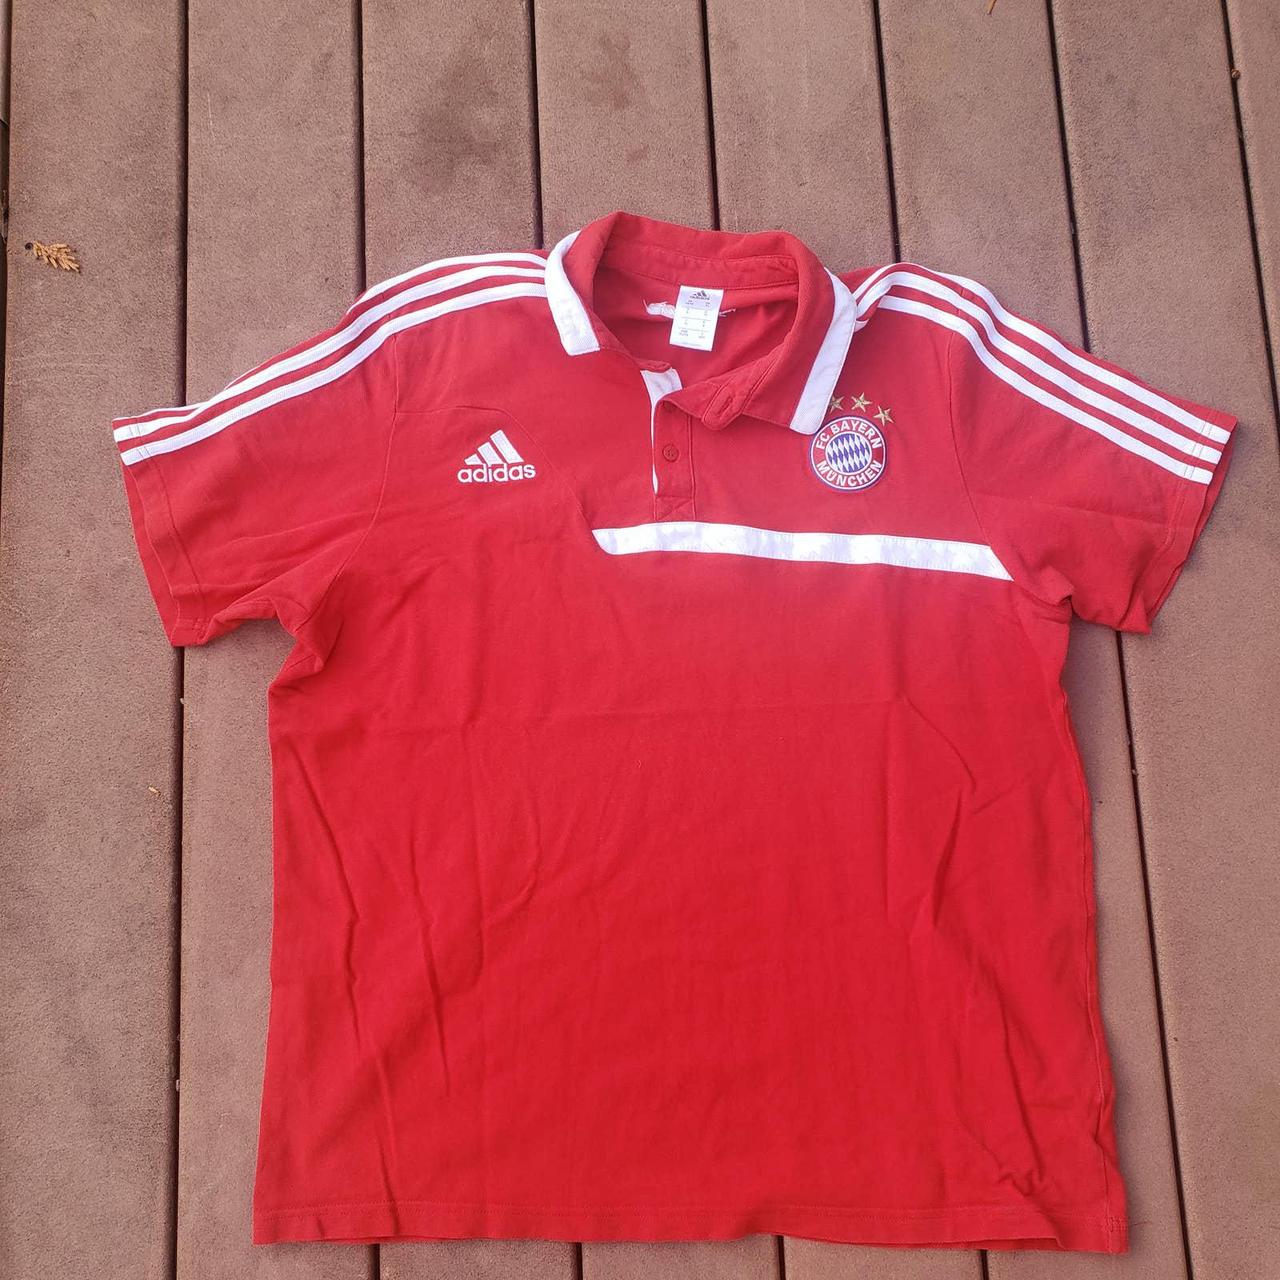 Product Image 1 - Adidas FC Bayern Munich Soccer